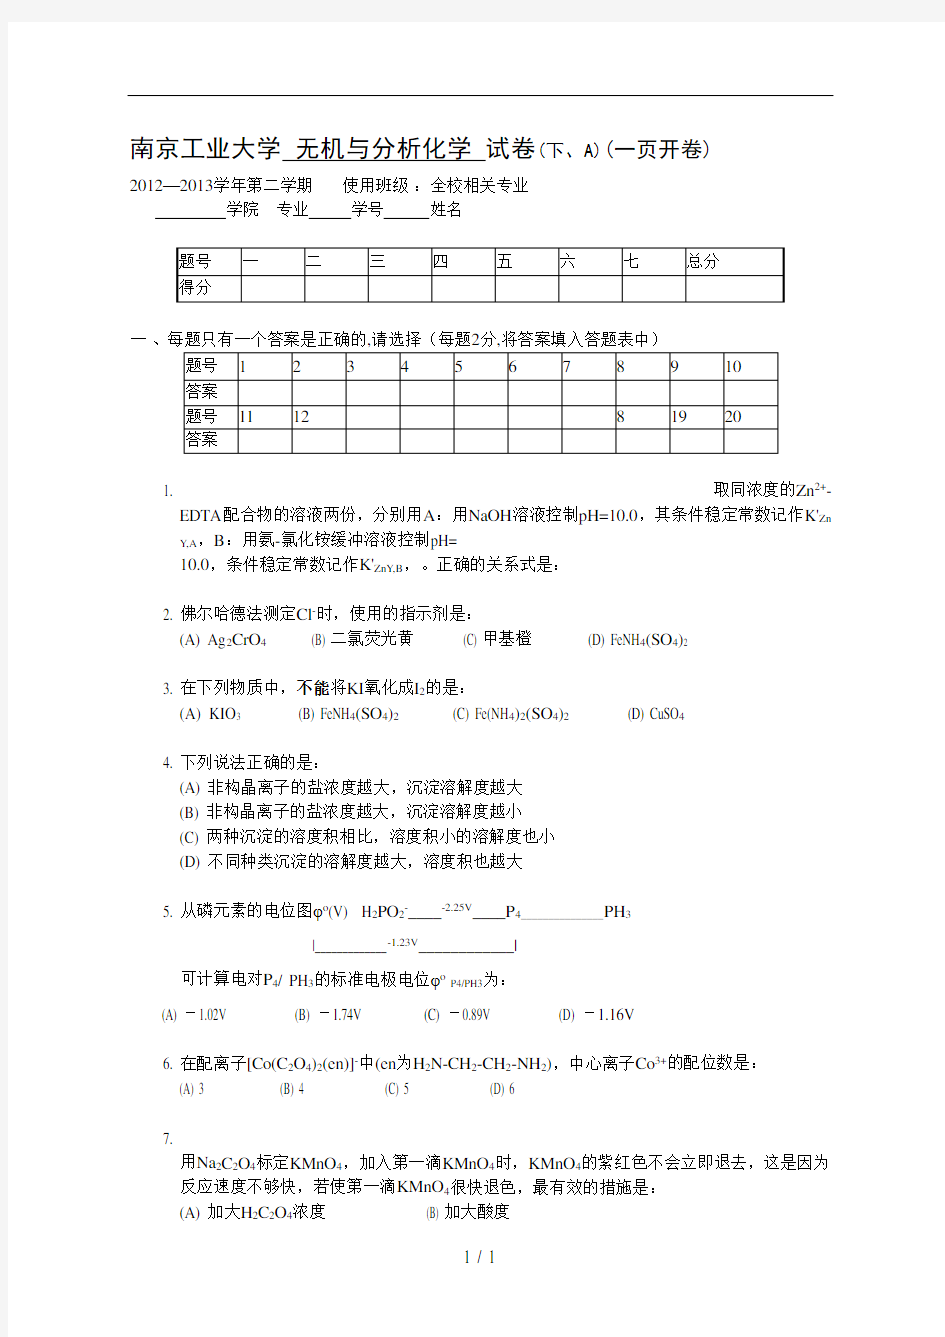 南京工业大学-无机与分析化学-试卷(下、A)